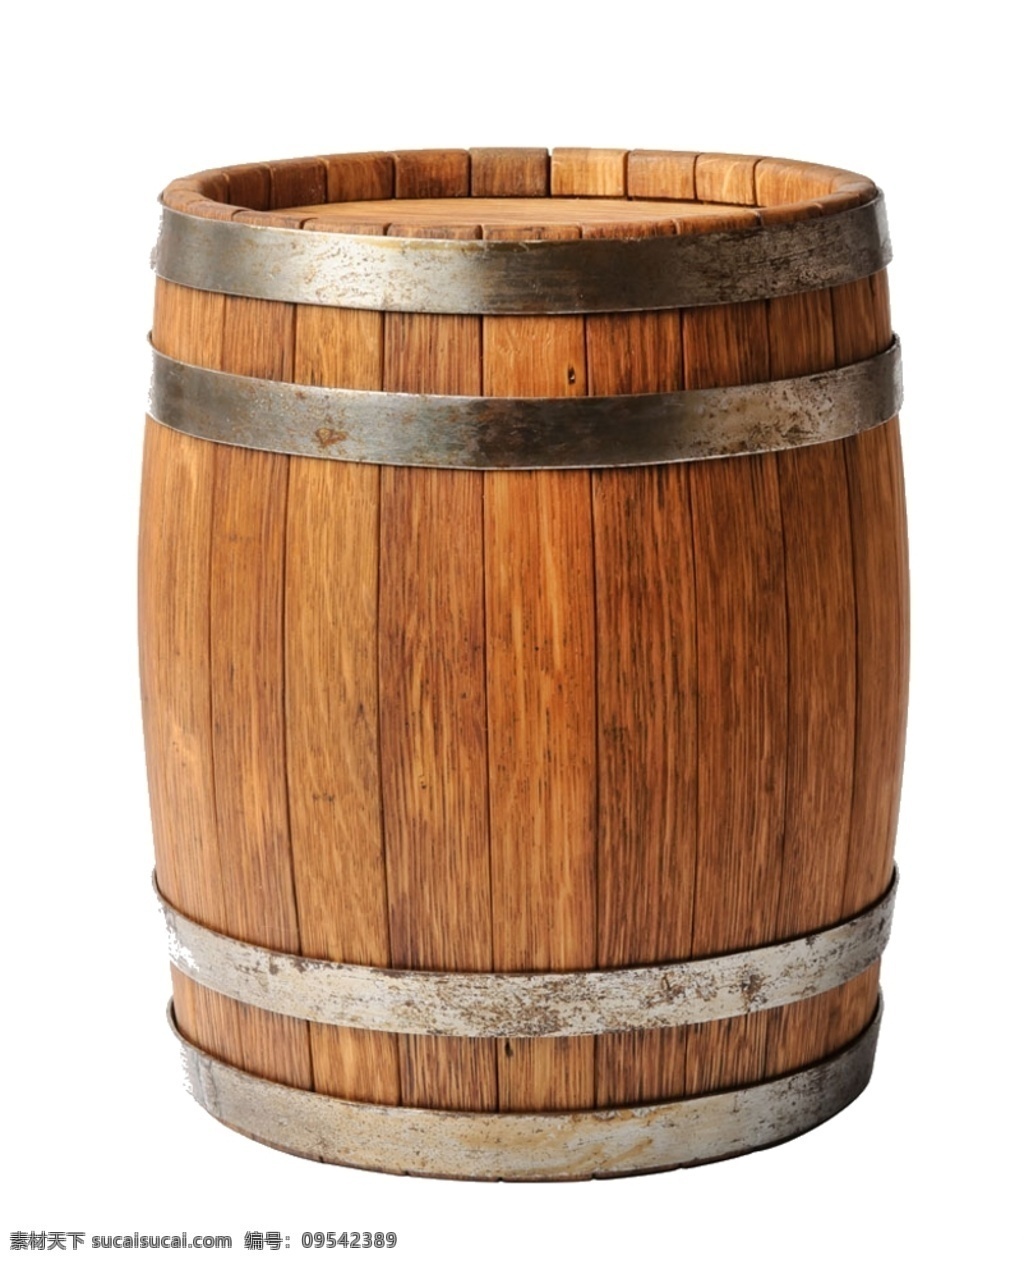 木桶图片 木桶 水桶 桶 酒桶 木制 木制水桶 素材图